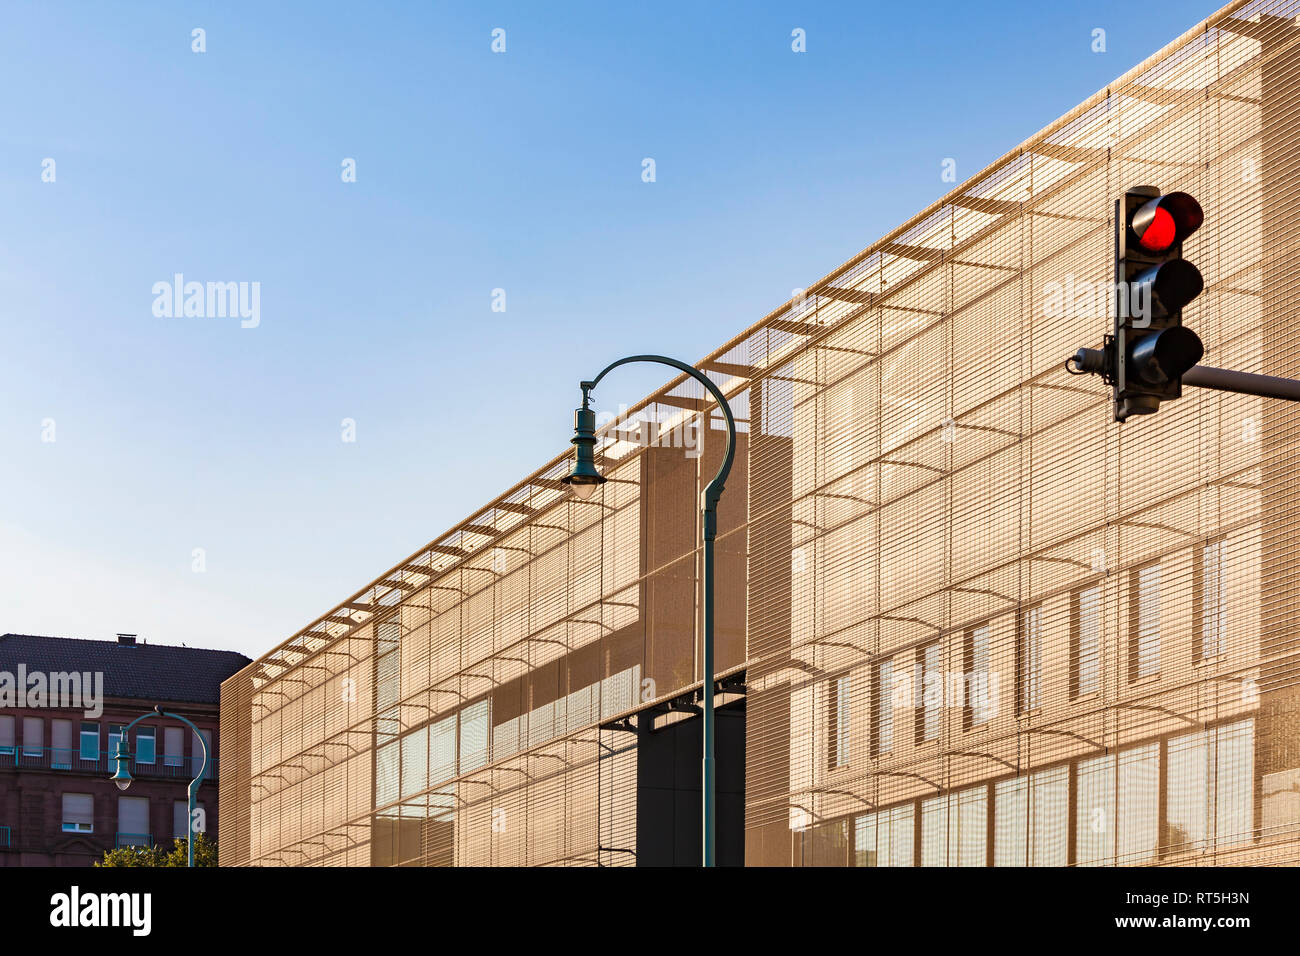 Alemania, Mannheim, parte de la fachada de la galería de arte de nueva construcción con luz roja y la luz de la calle en primer plano Foto de stock